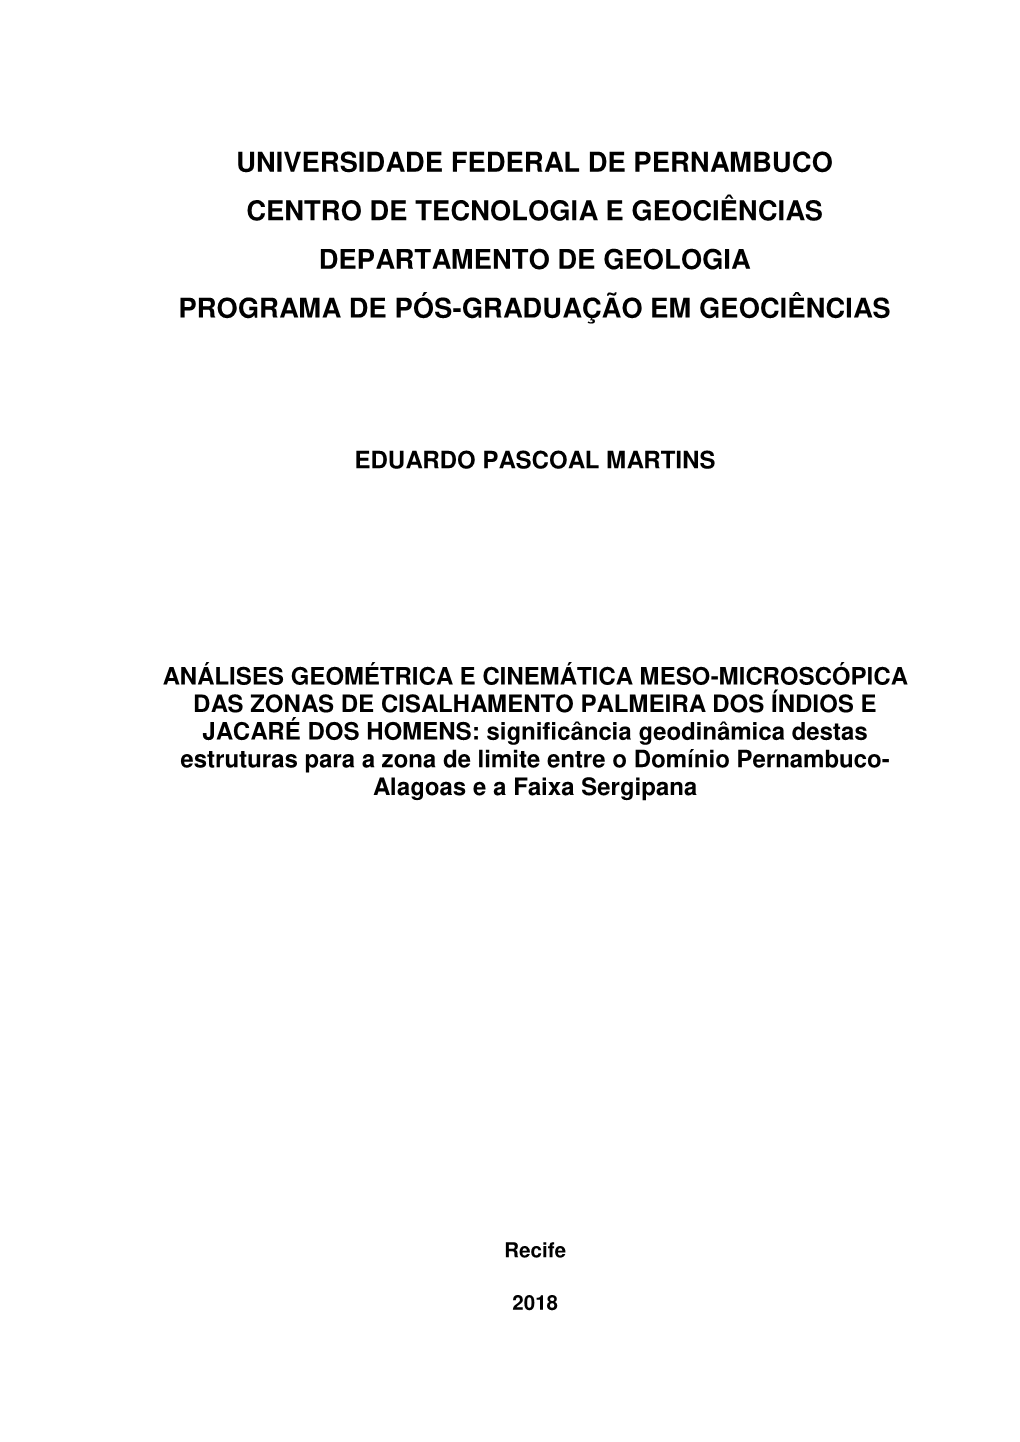 DISSERTAÇÃO Eduardo Pascoal Martins.Pdf